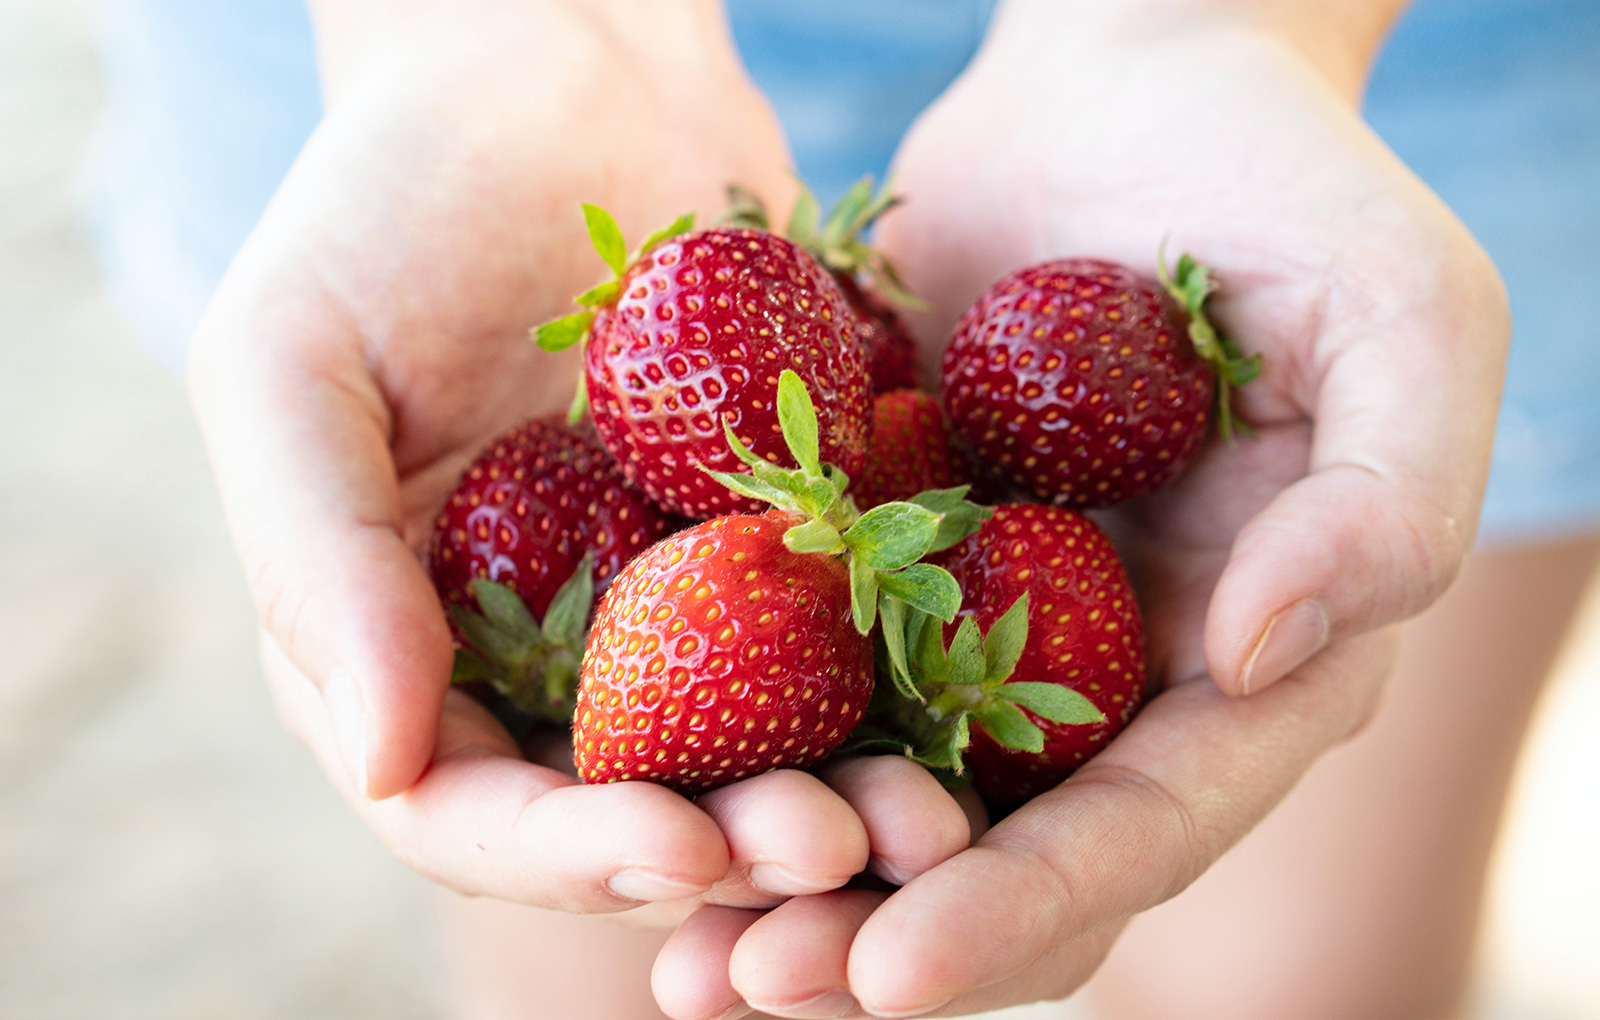 Growing Strawberries in Your Own Garden